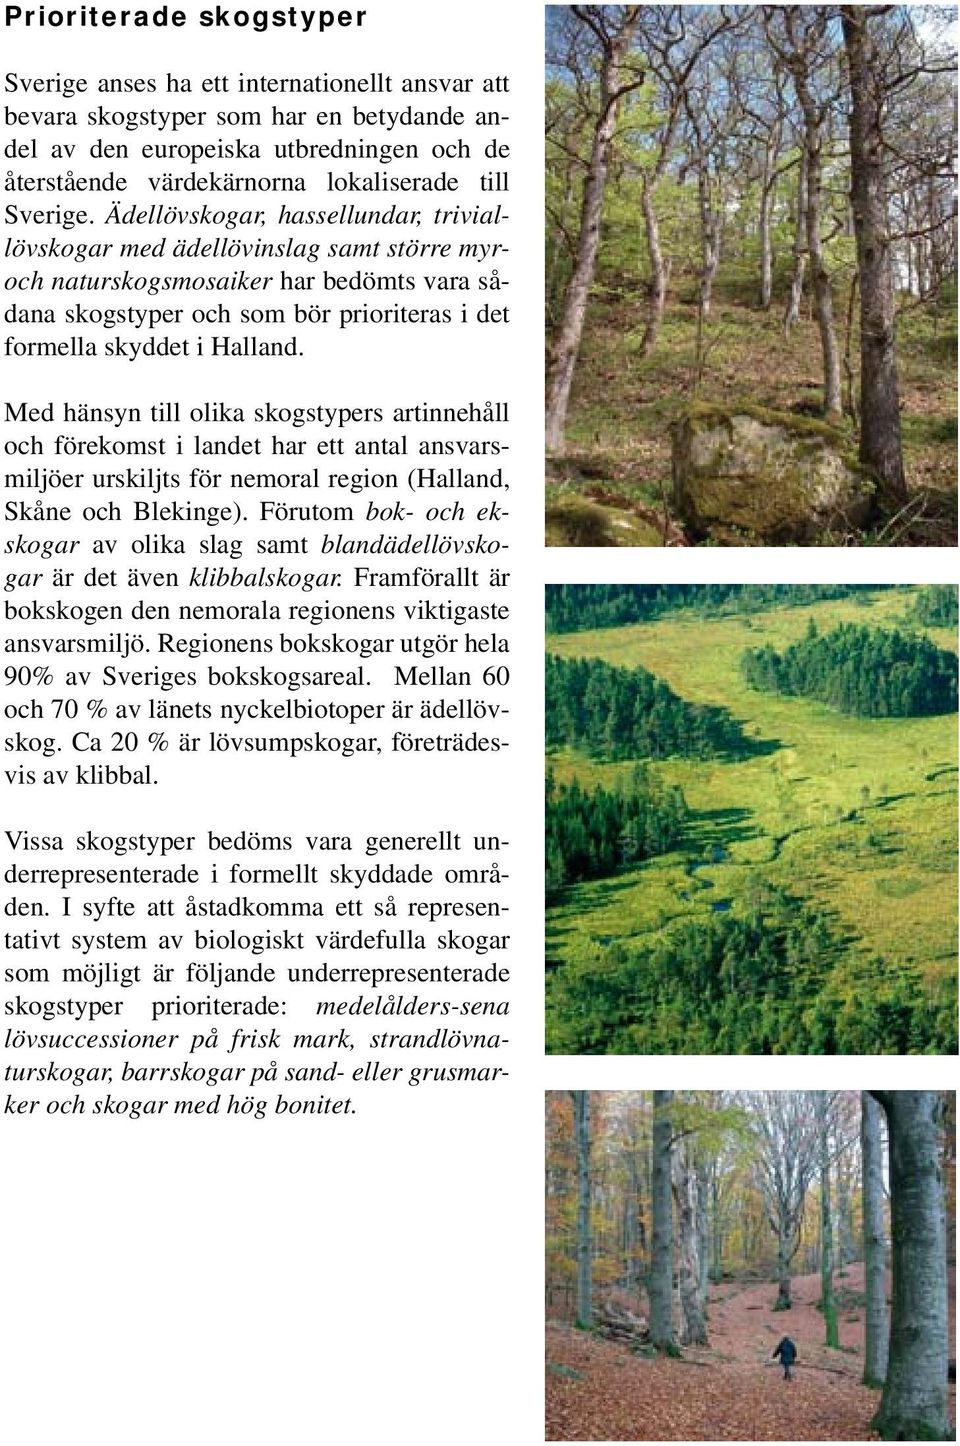 Ädellövskogar, hassellundar, triviallövskogar med ädellövinslag samt större myroch naturskogsmosaiker har bedömts vara sådana skogstyper och som bör prioriteras i det formella skyddet i Halland.